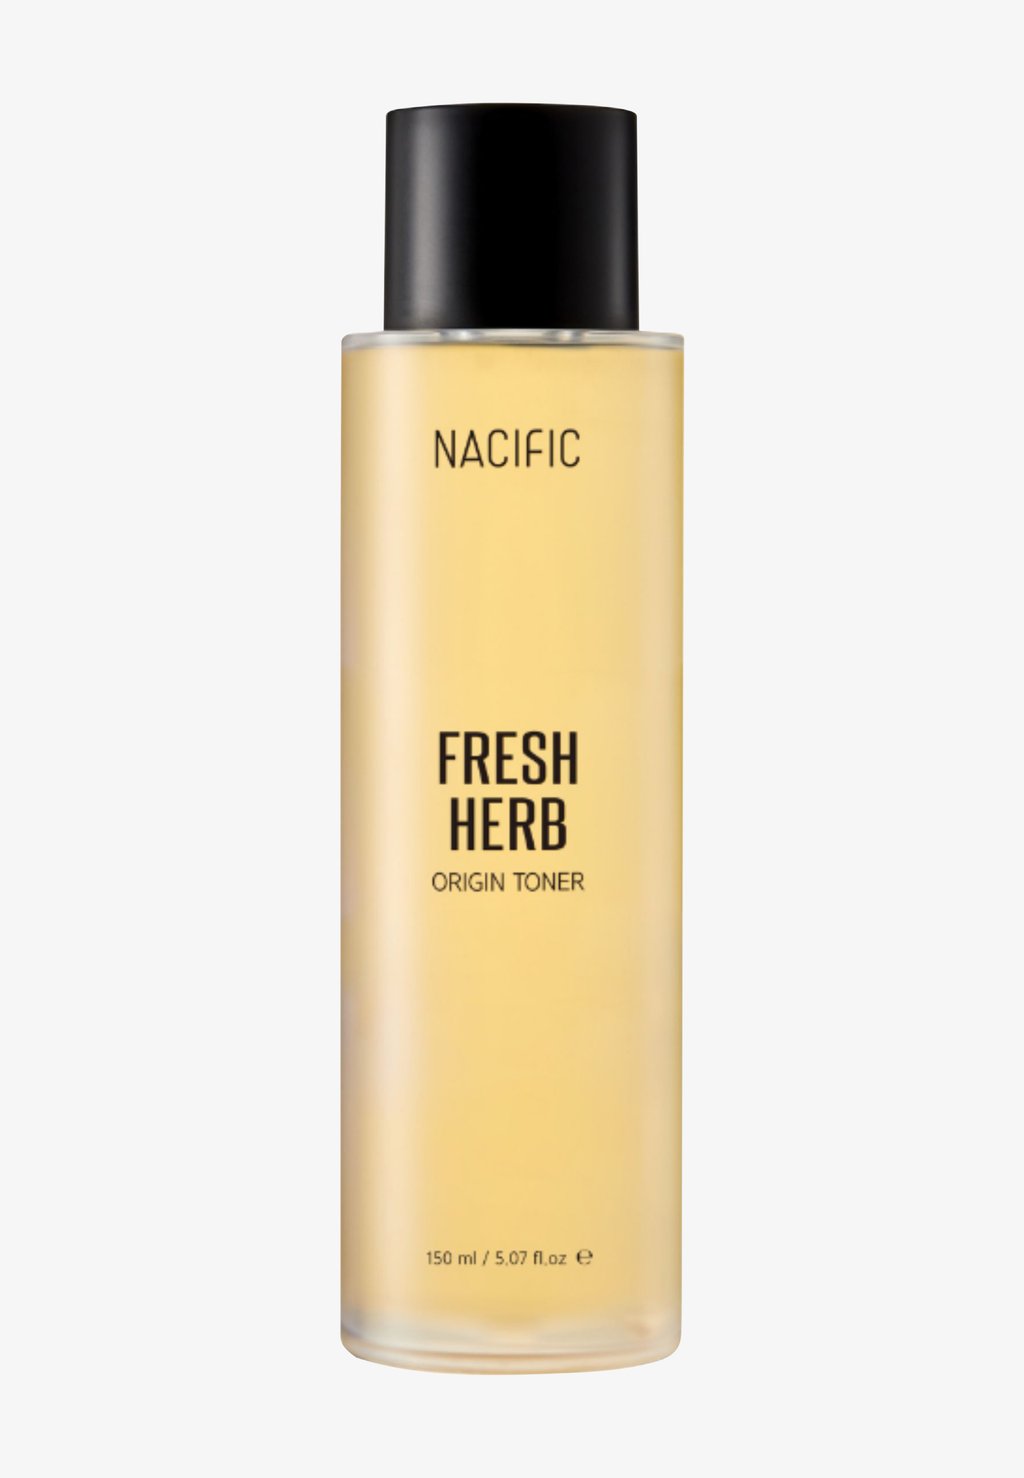 nacific fresh herb origin toner Тоник для лица Fresh Herb Origin Toner NACIFIC